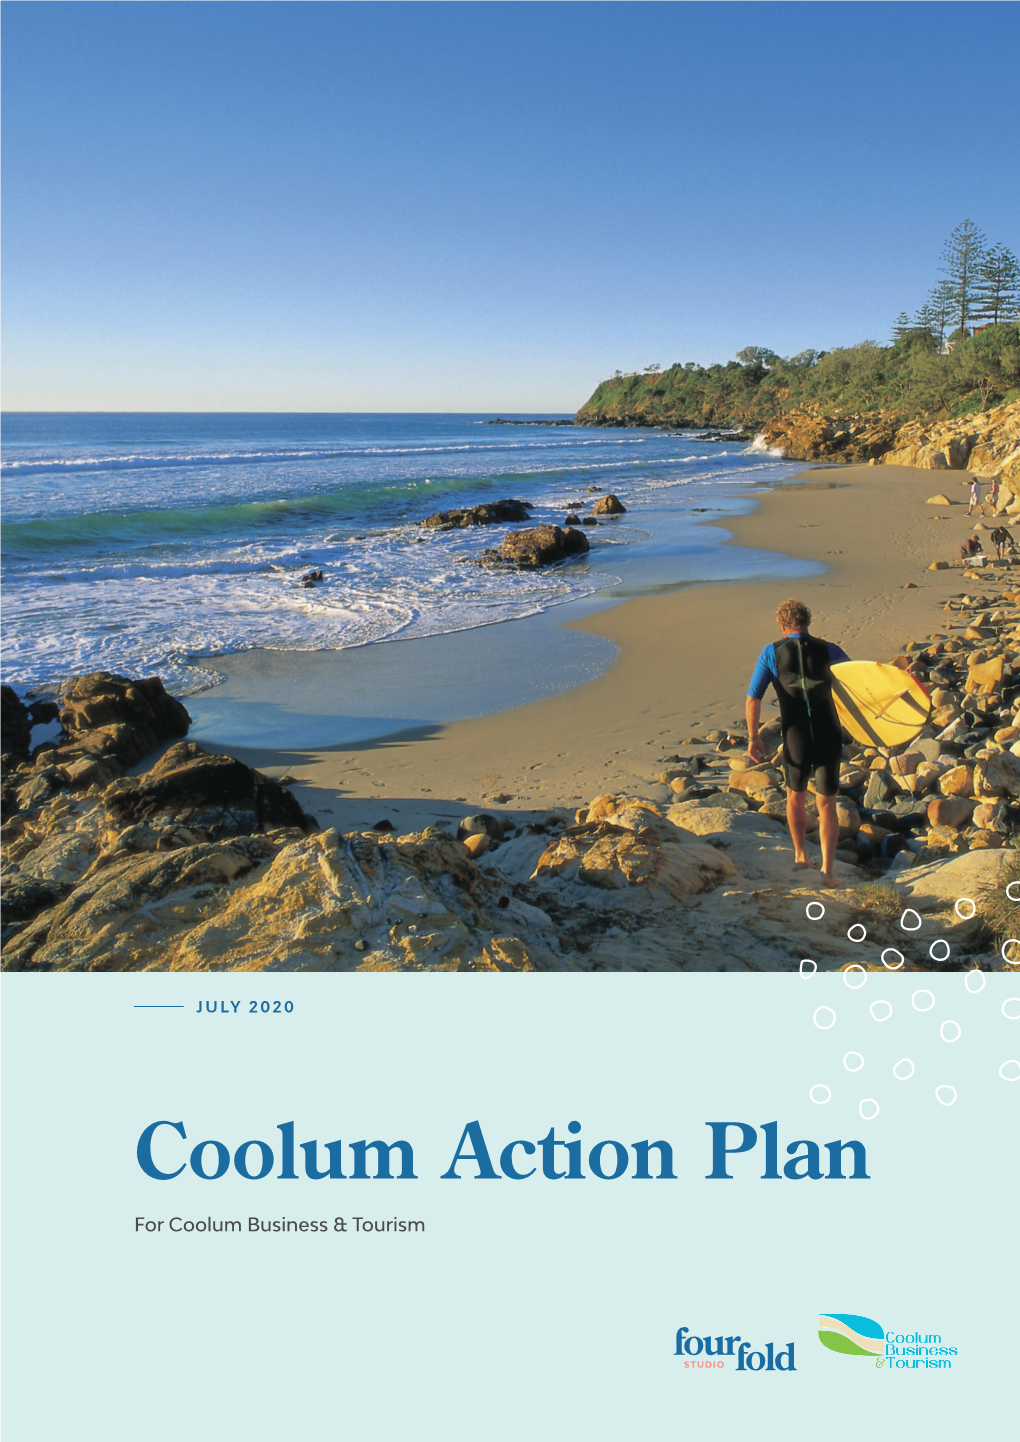 Coolum Action Plan